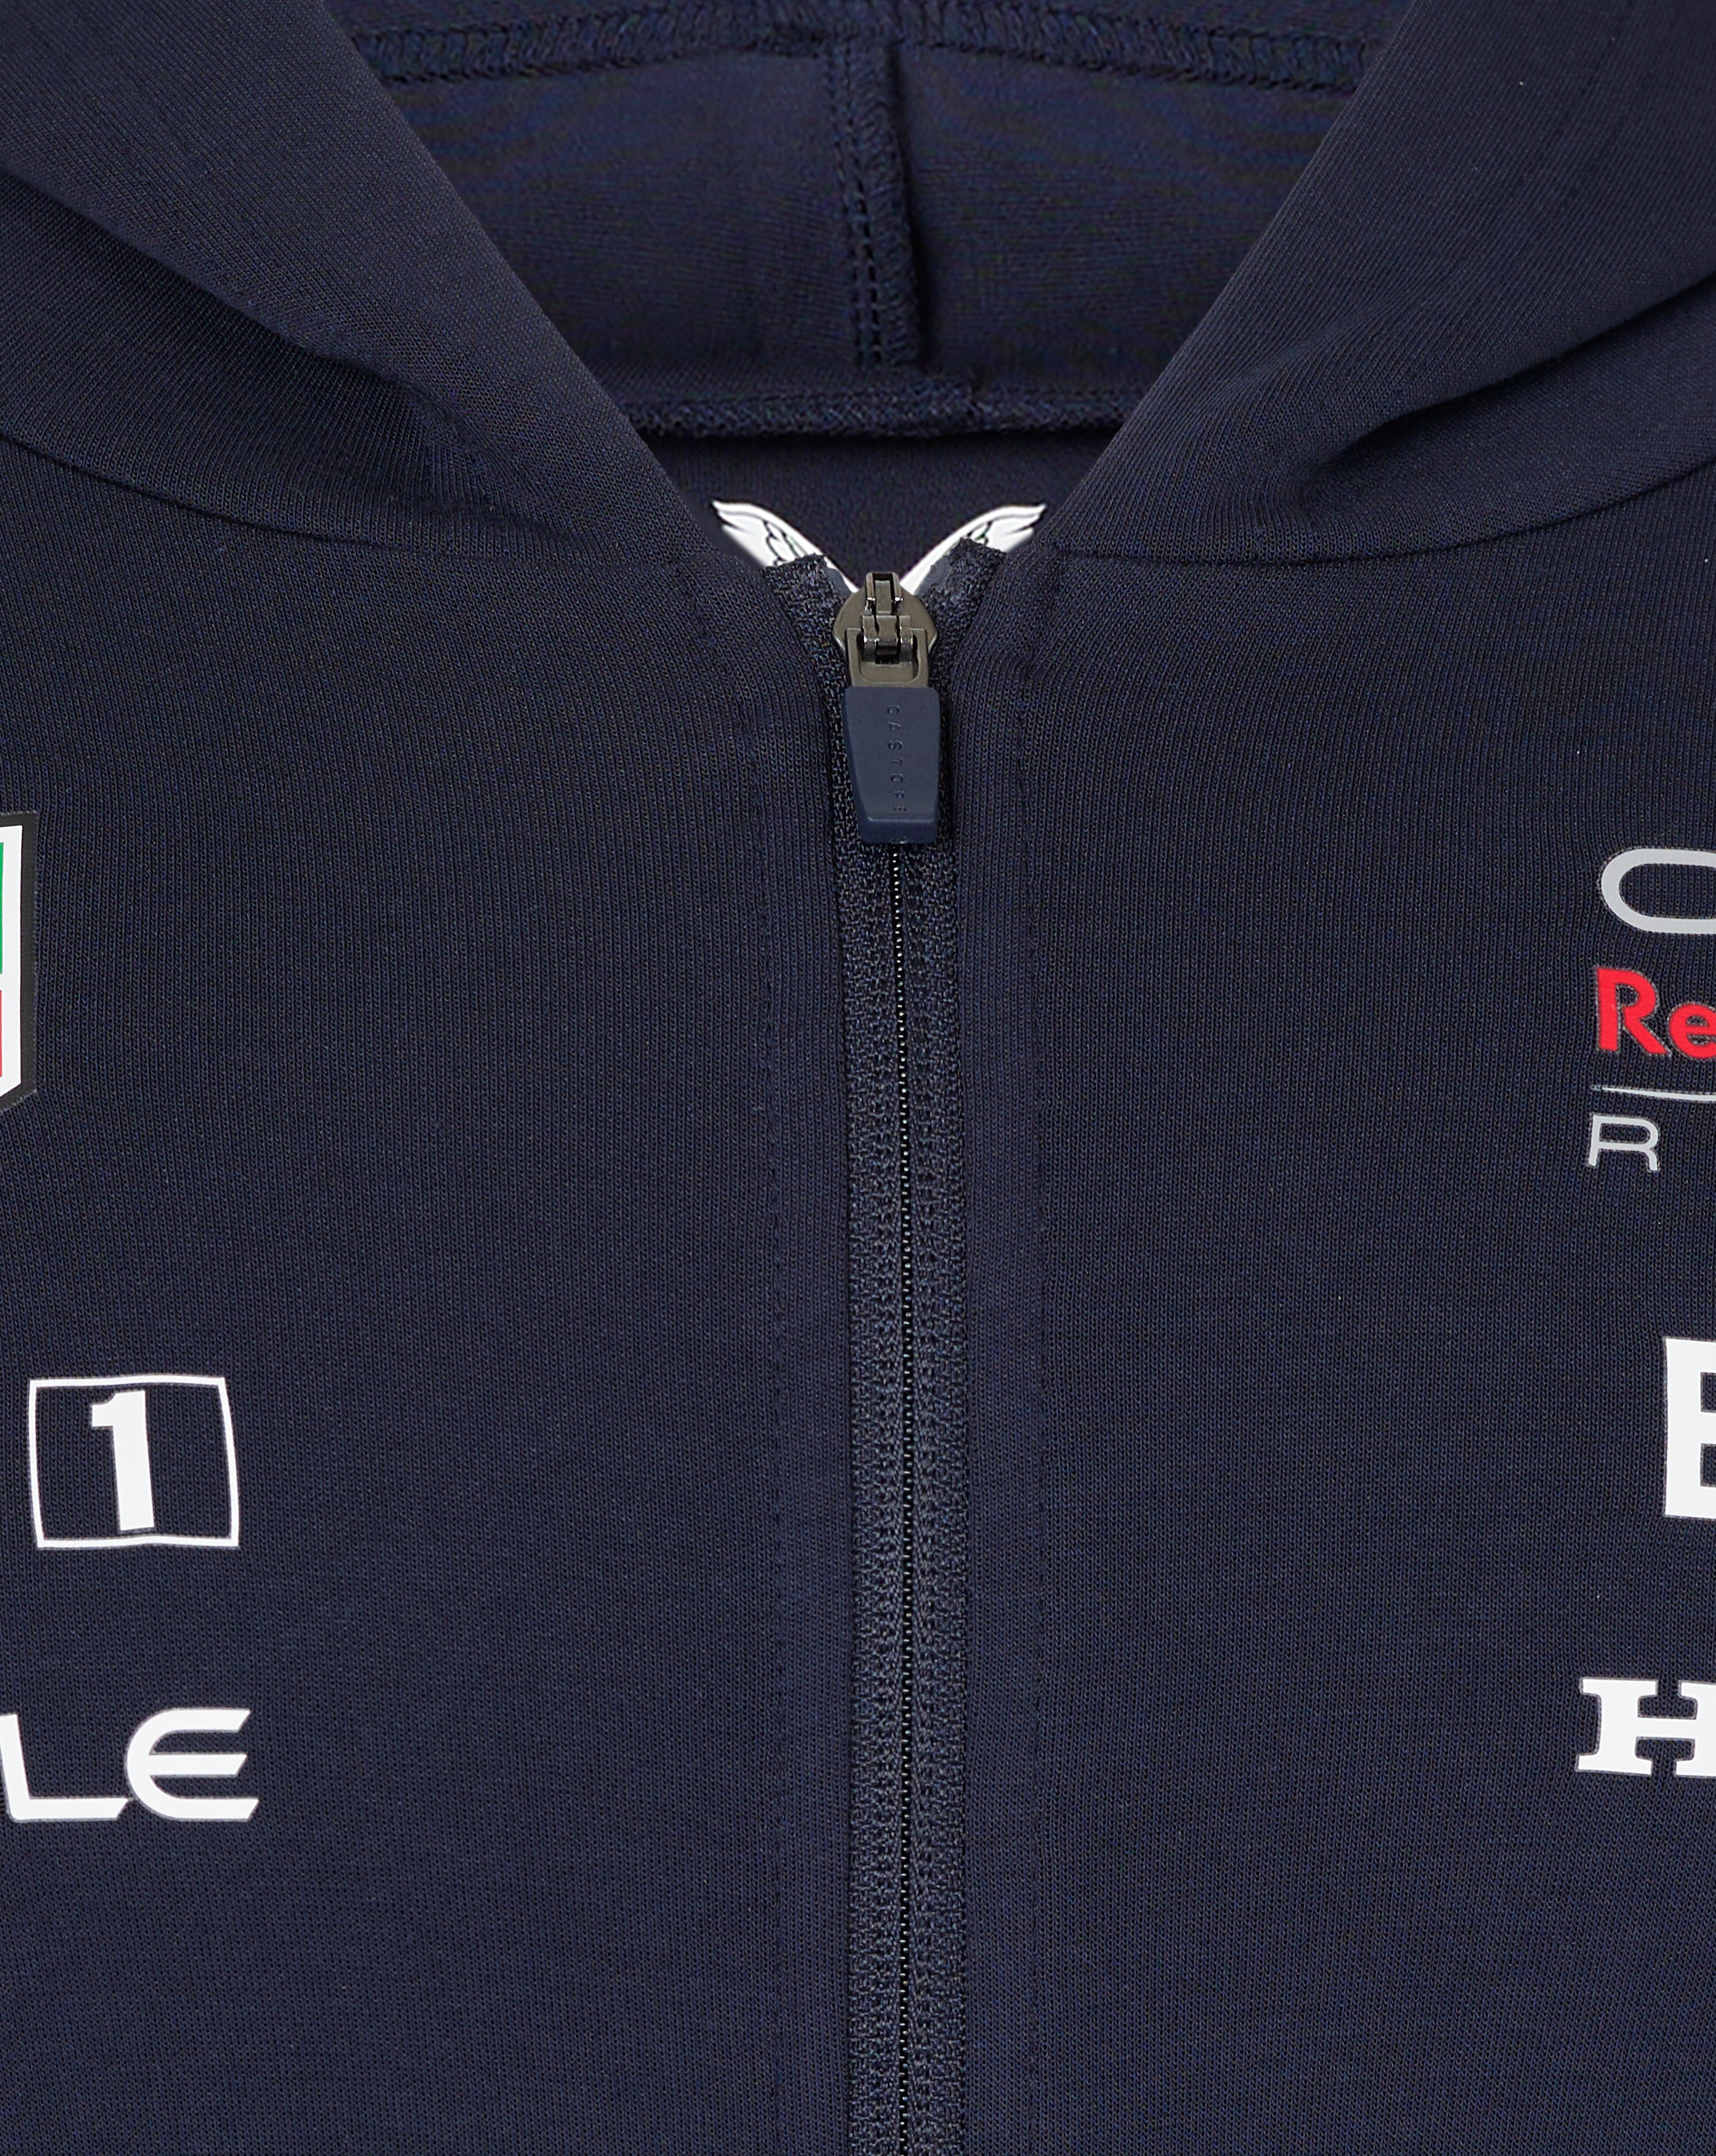 Red Bull Racing F1 2024 Team Full Zip Hooded Sweatshirt- Navy